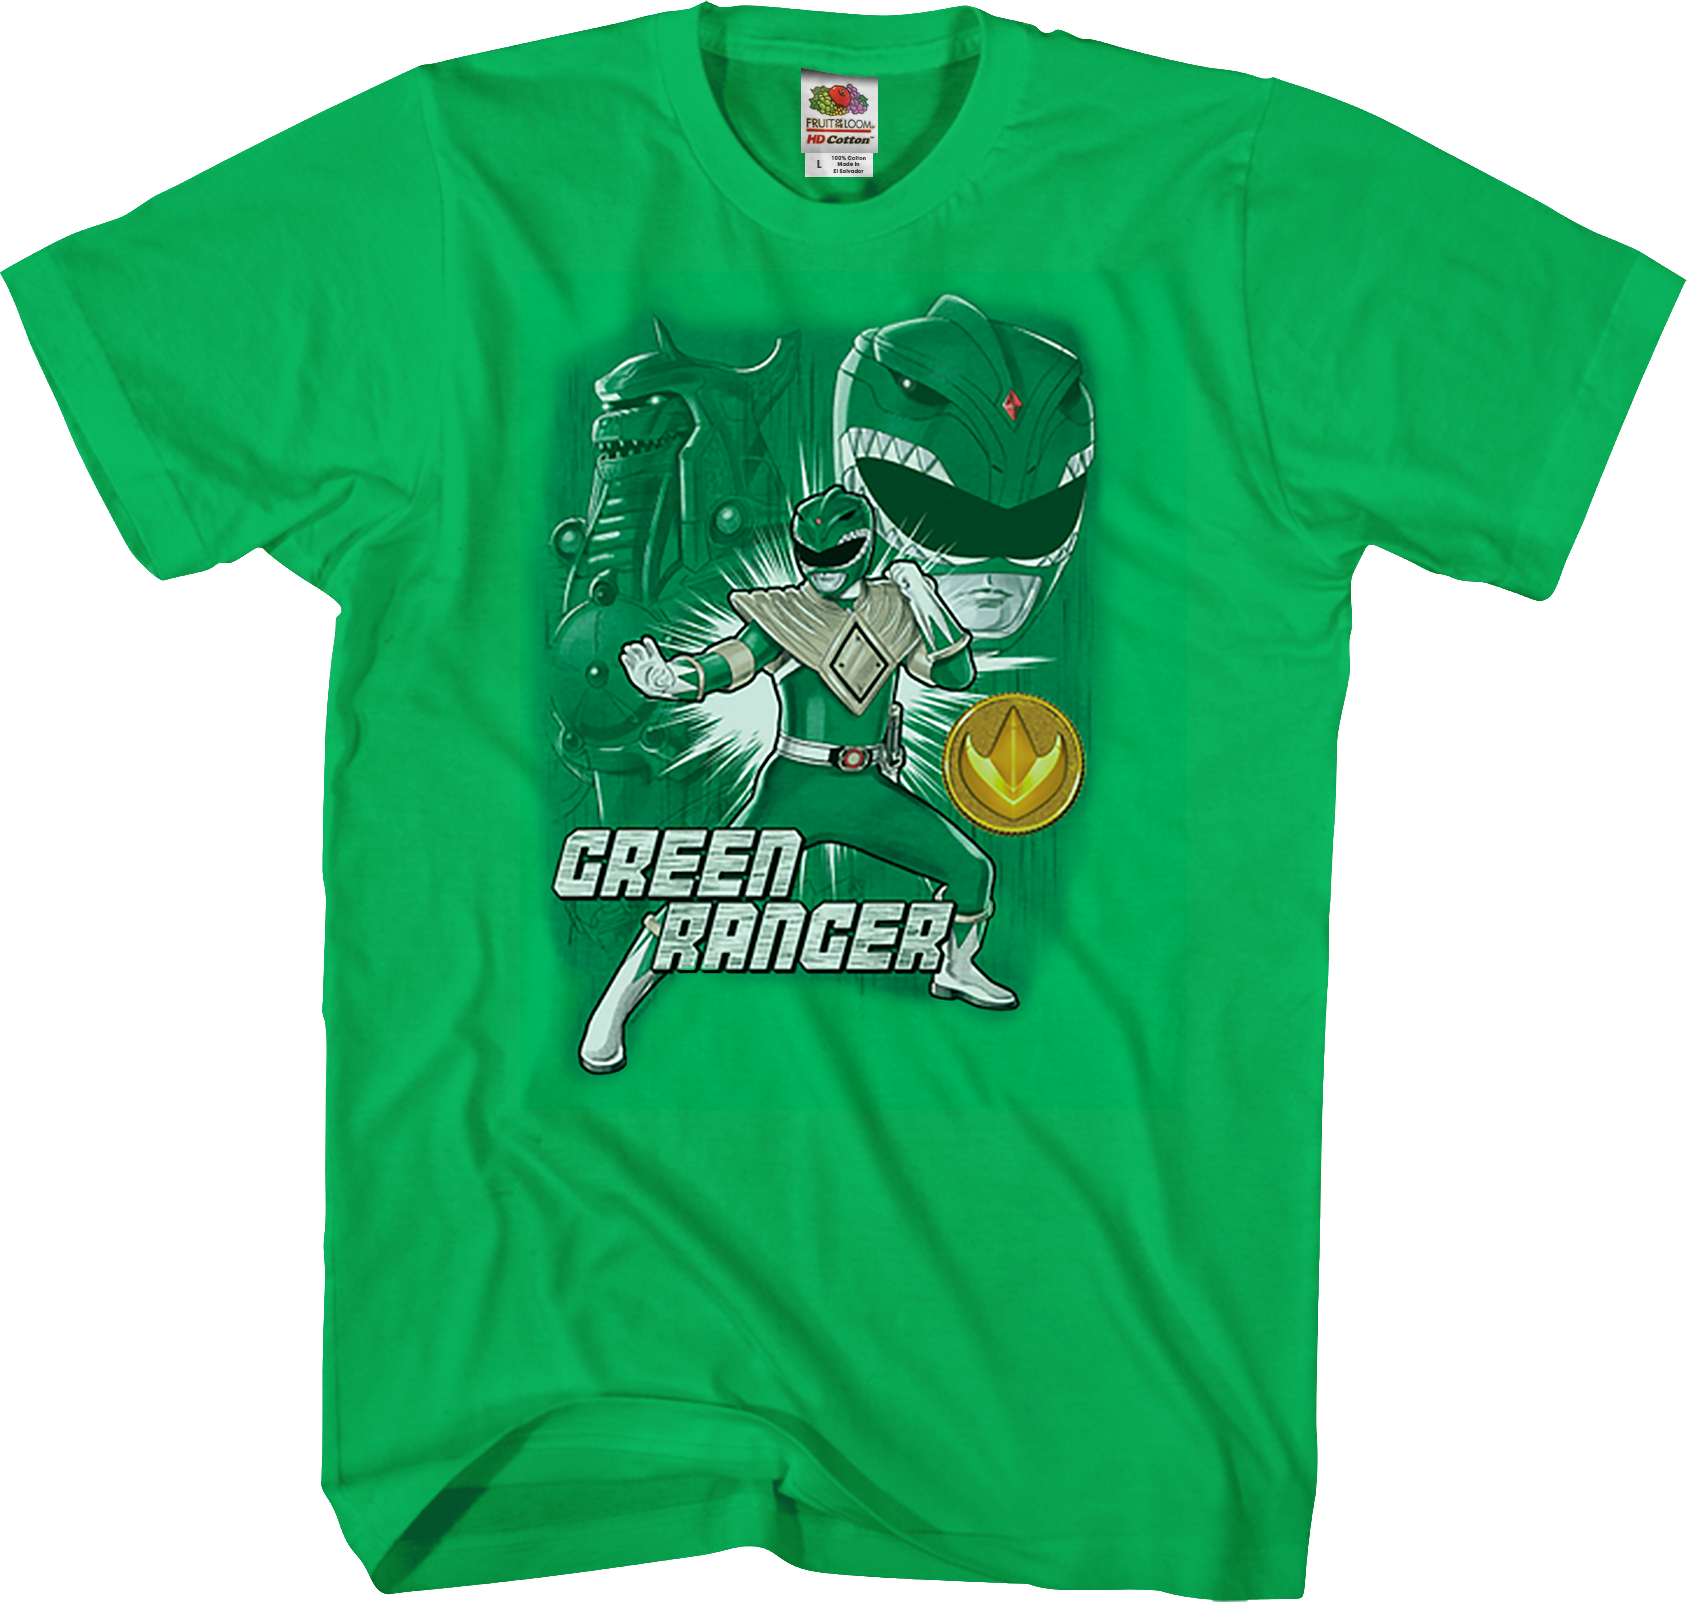 ranger green t shirt